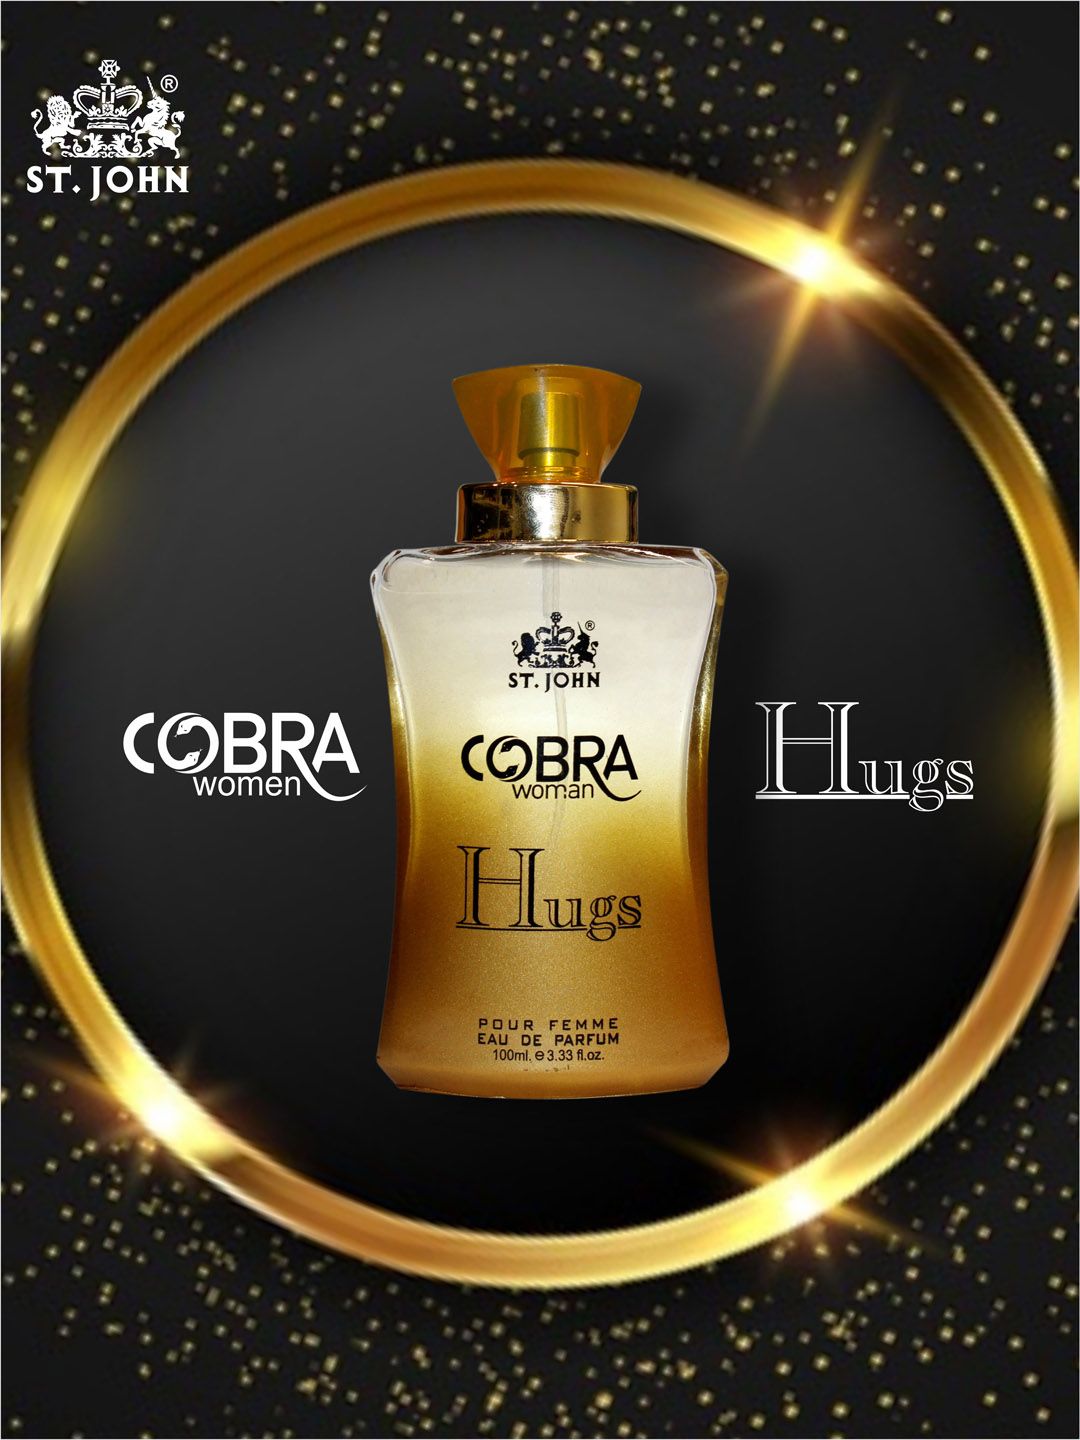 St. John Cobra Hugs Pour Femme Eau de Parfum 100 ml Price in India